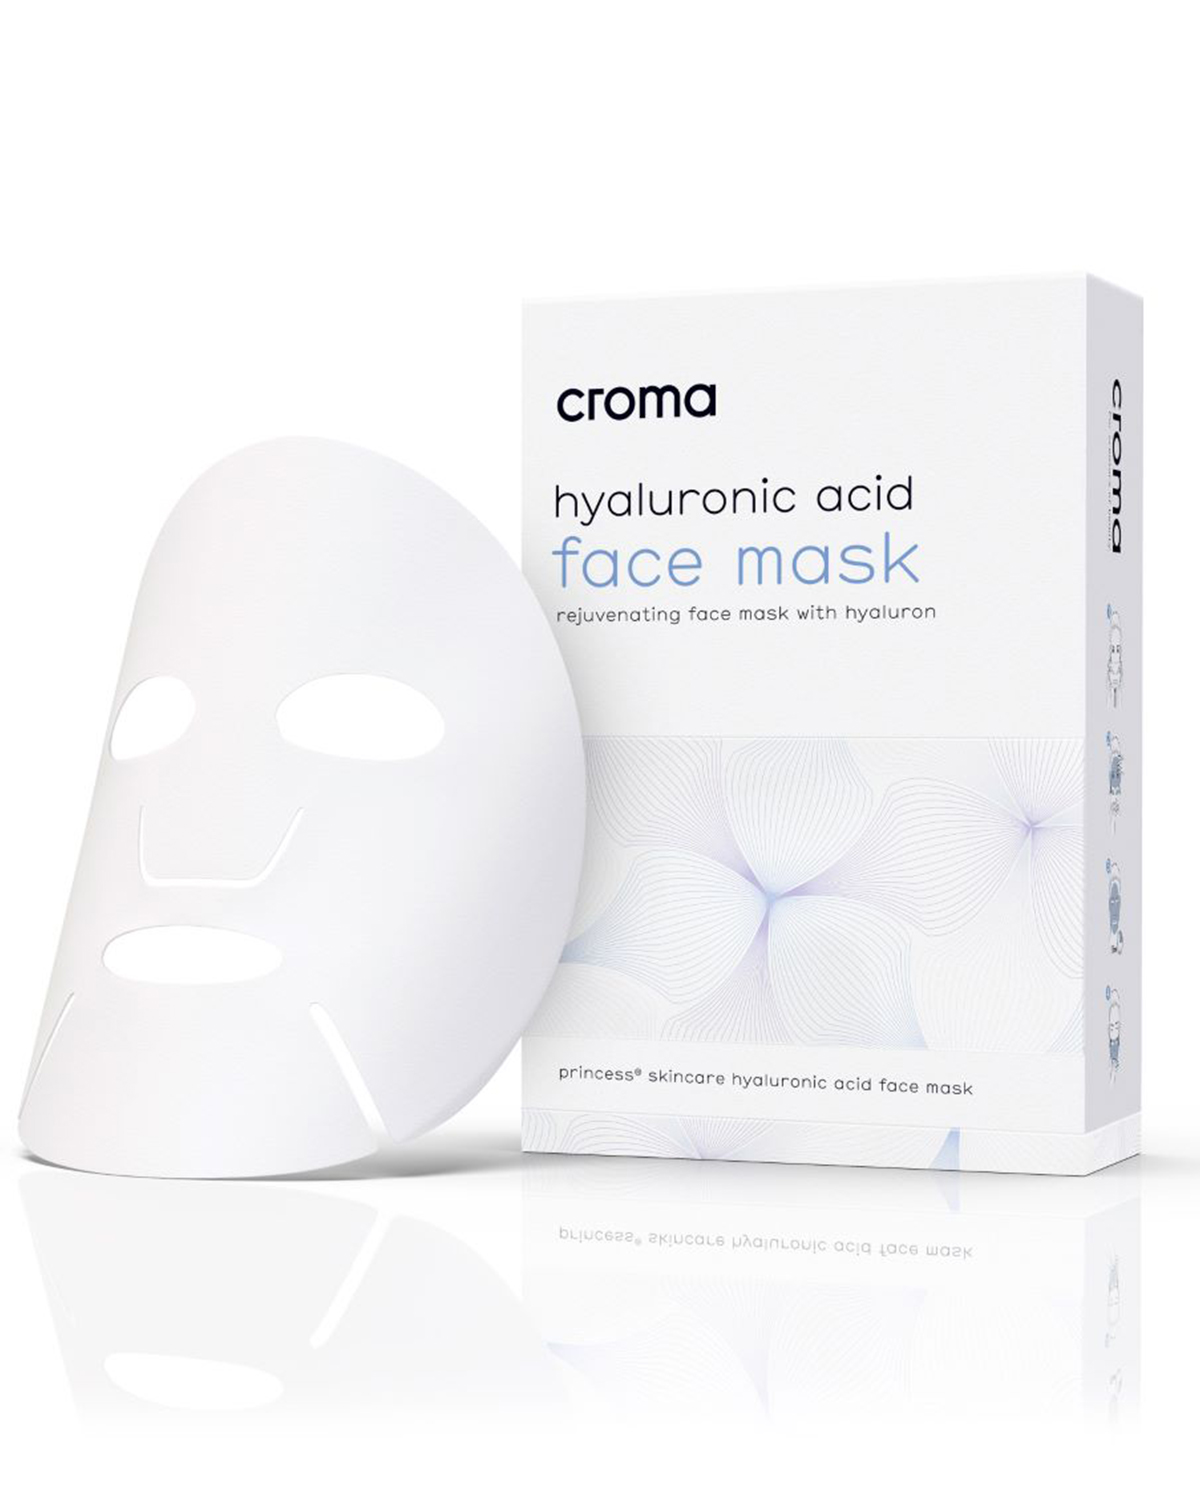 Croma hyaluronic acid face mask sRGB Large 1